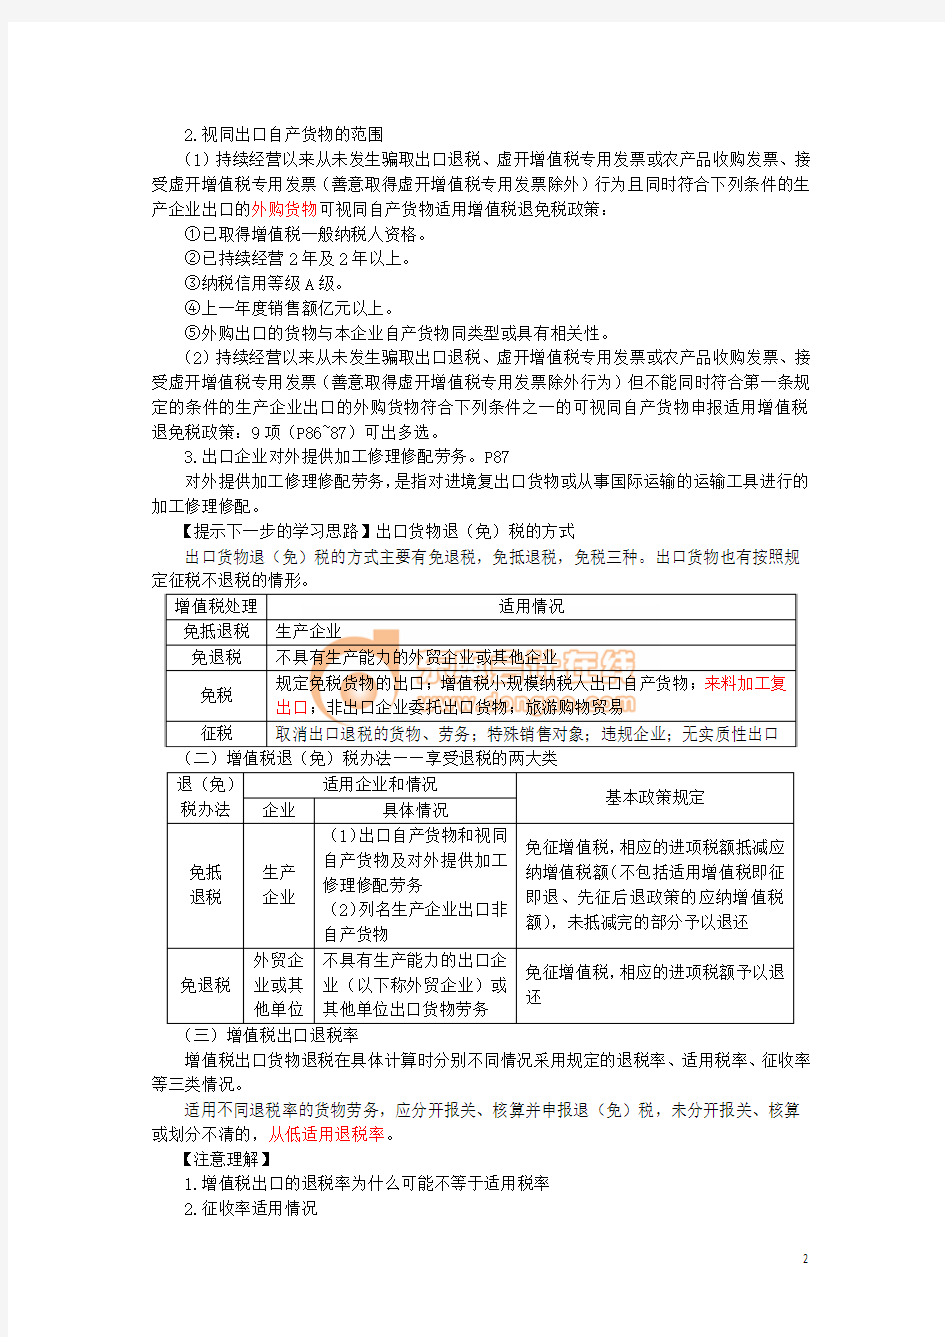 15年注会考试税法基础班刘颖讲义_016_0211_j